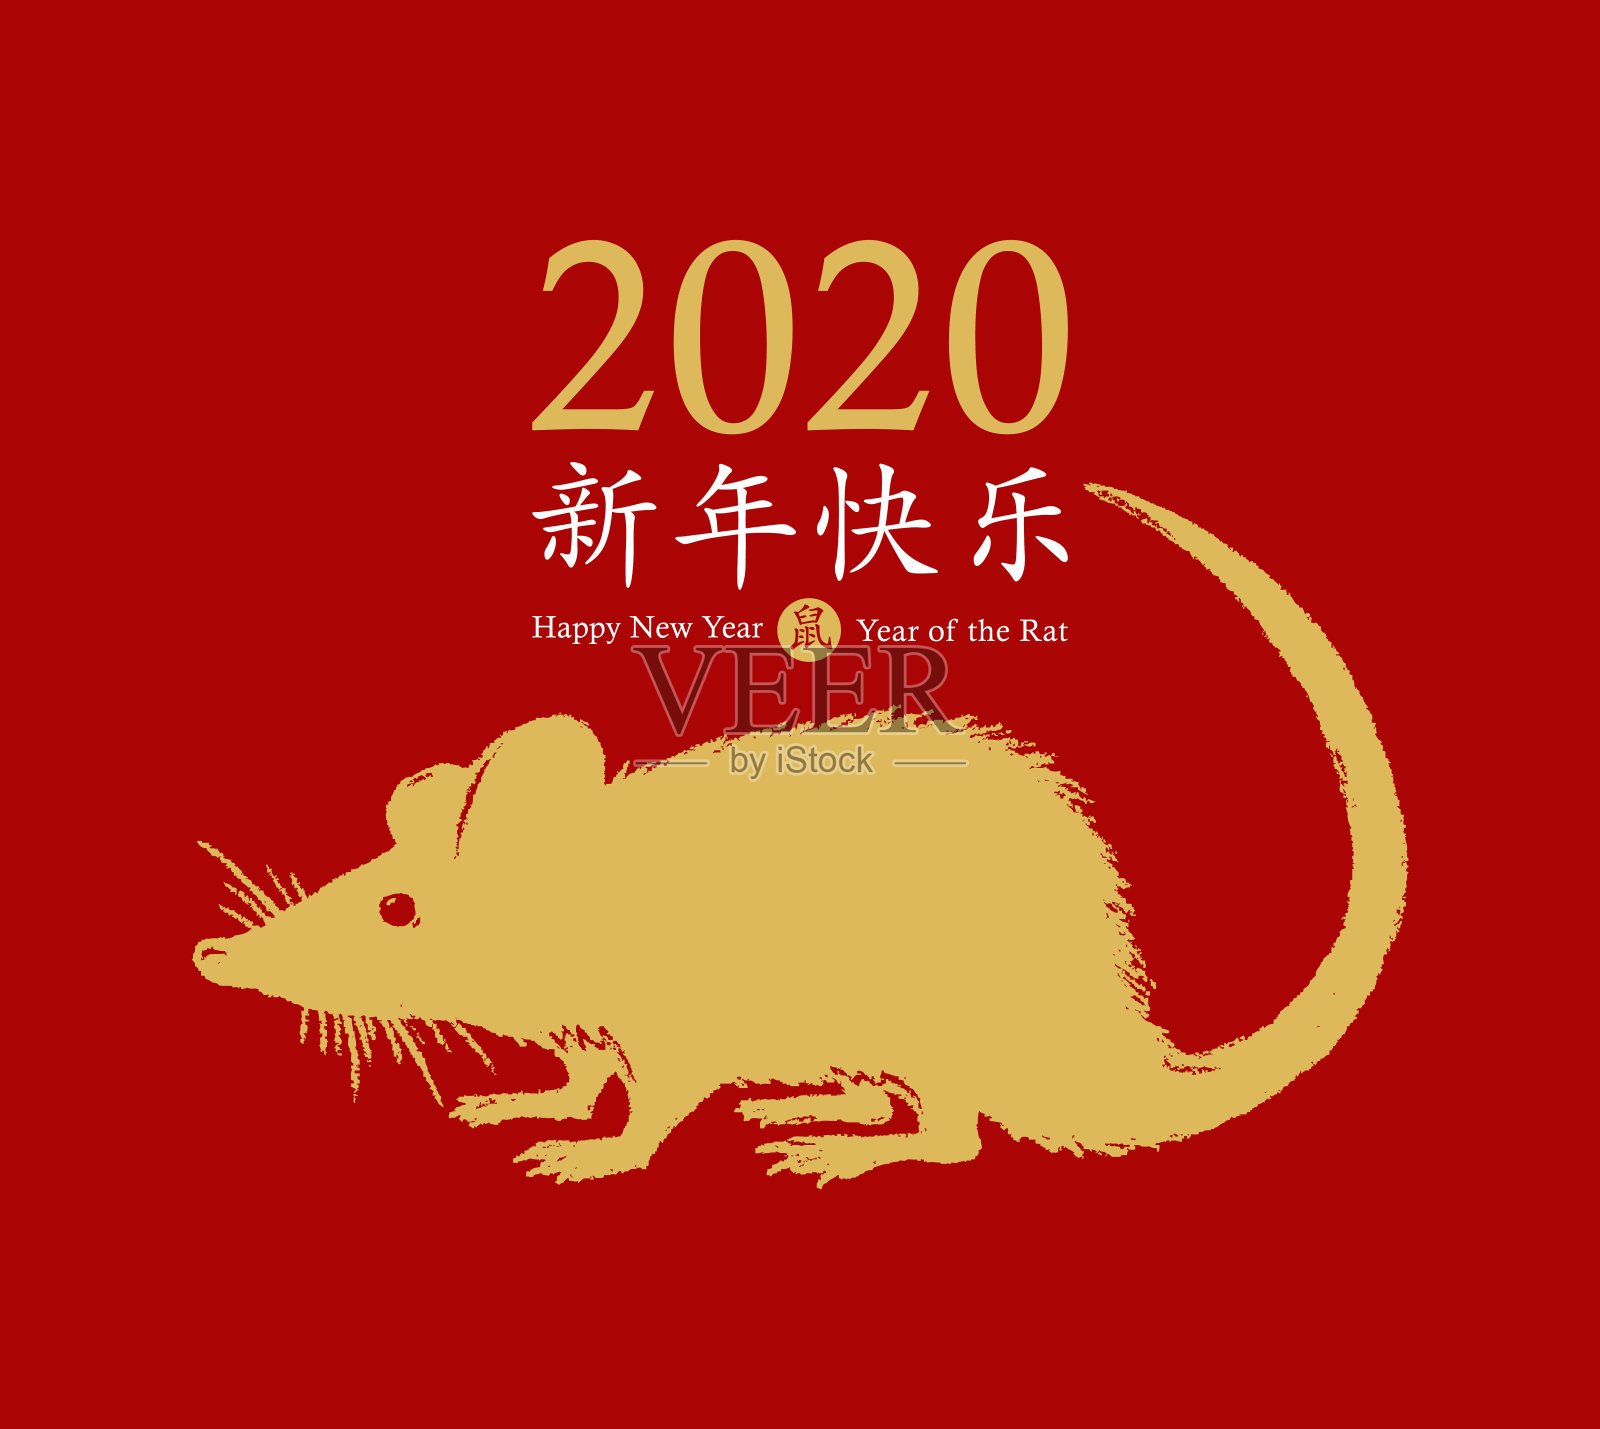 2020年的鼠年。手画金老鼠图标摇着尾巴，祝新年快乐。十二生肖动物的象征。中国象形文字翻译:2020年新年快乐，老鼠。向量插画图片素材